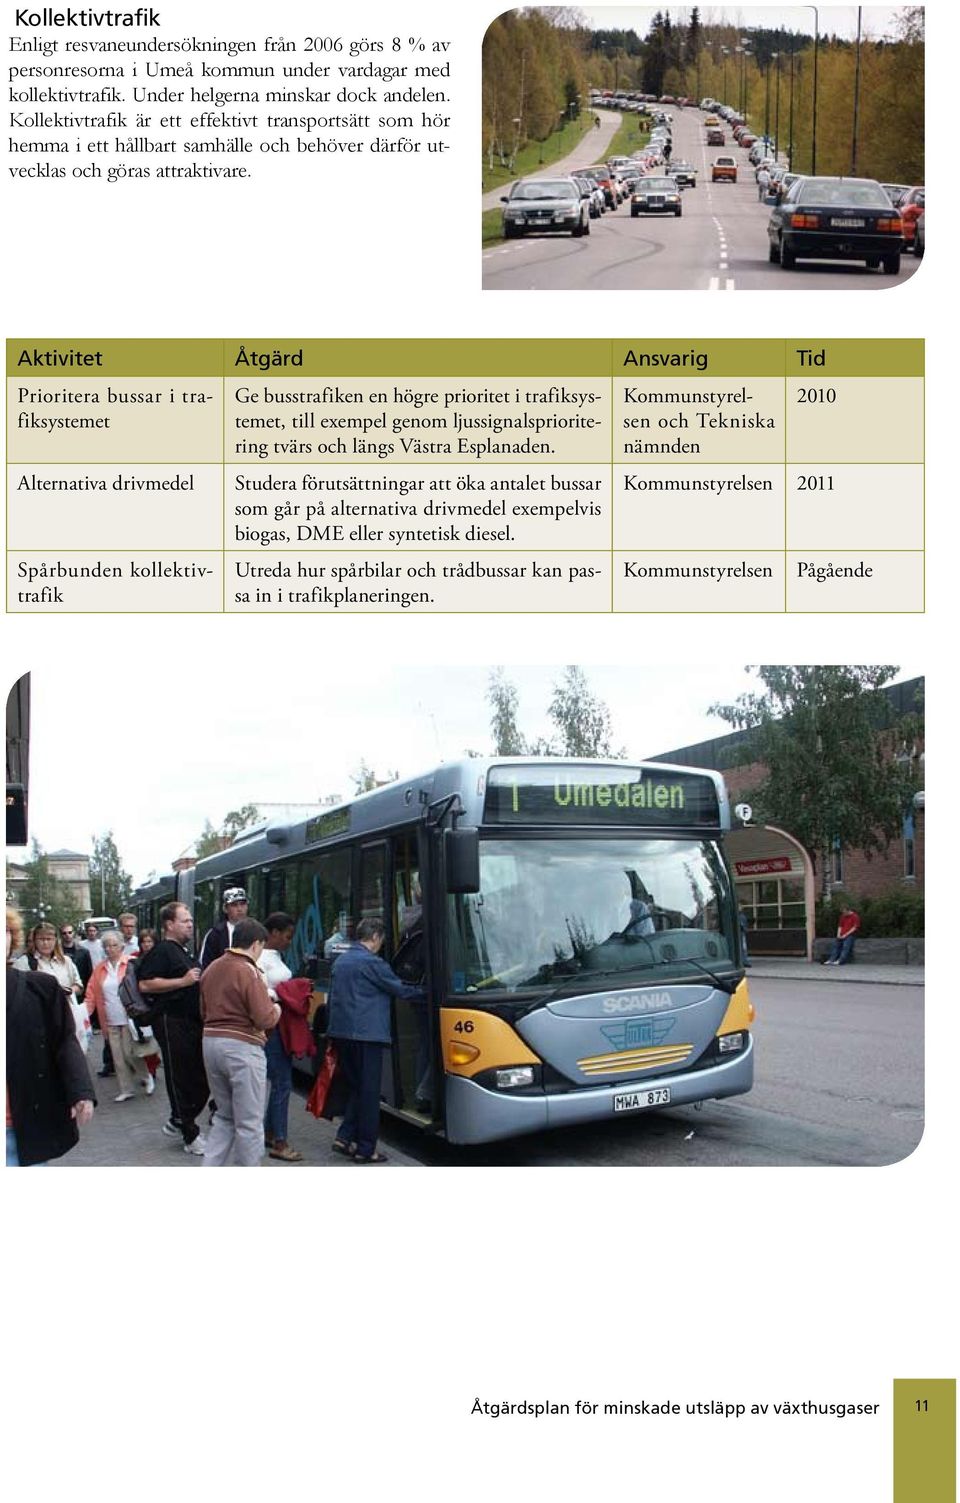 Prioritera bussar i trafiksystemet Alternativa drivmedel Spårbunden kollektivtrafik Ge busstrafiken en högre prioritet i trafiksystemet, till exempel genom ljussignalsprioritering tvärs och längs